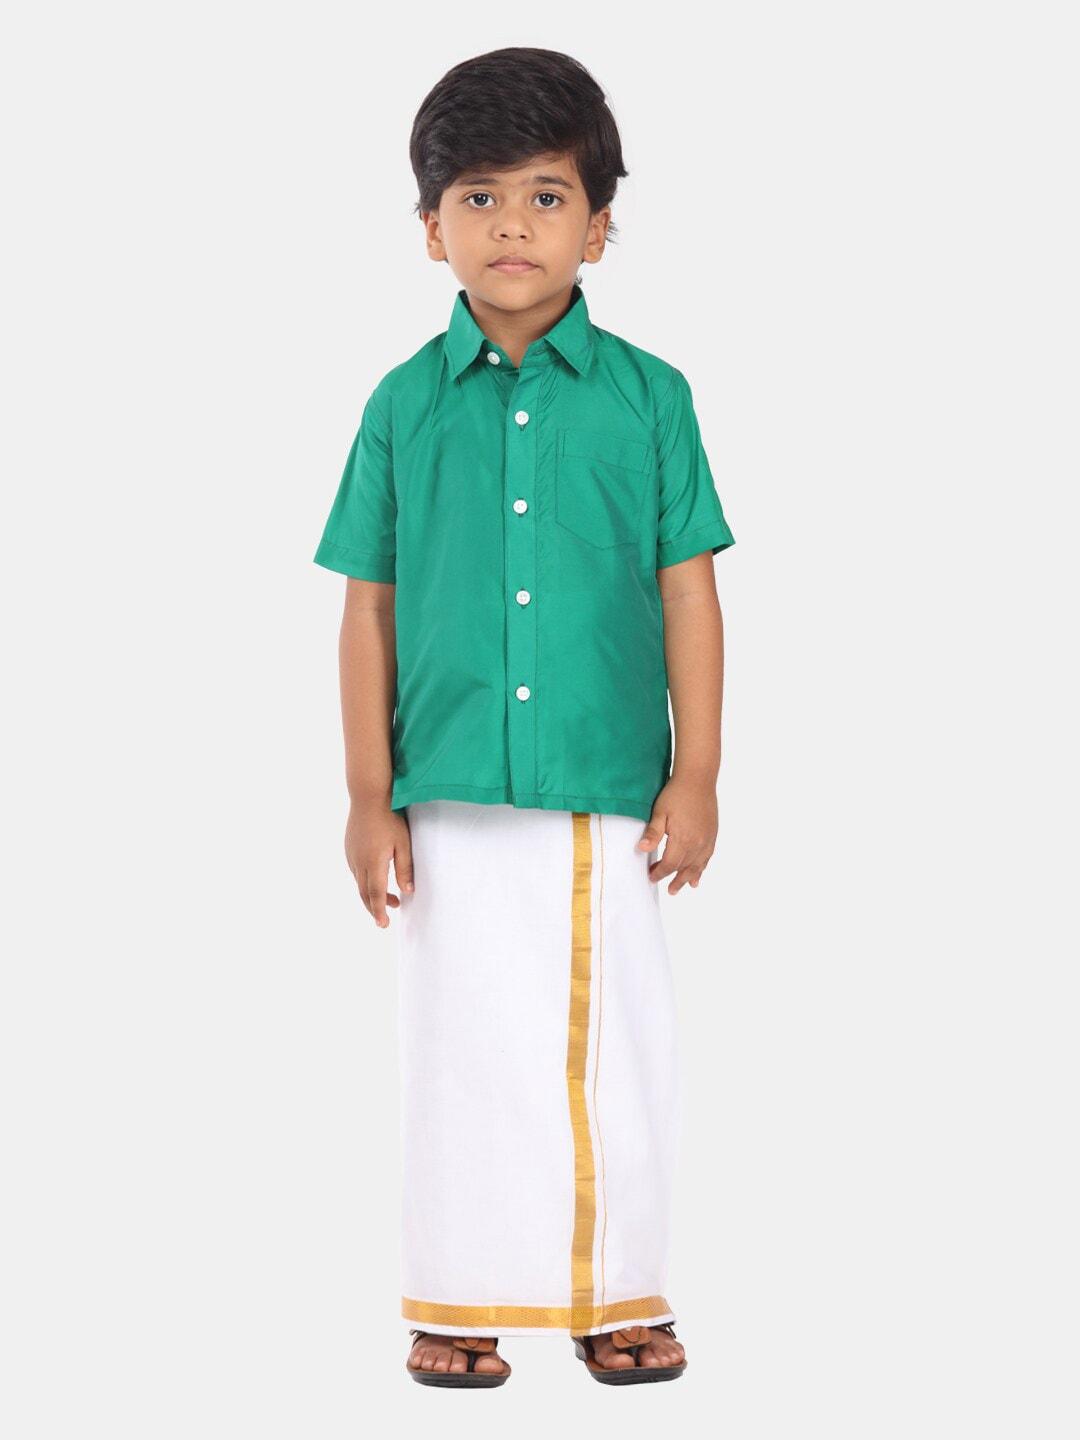 Sethukrishna Boys Ethnic Shirt And Veshti Clothing Set